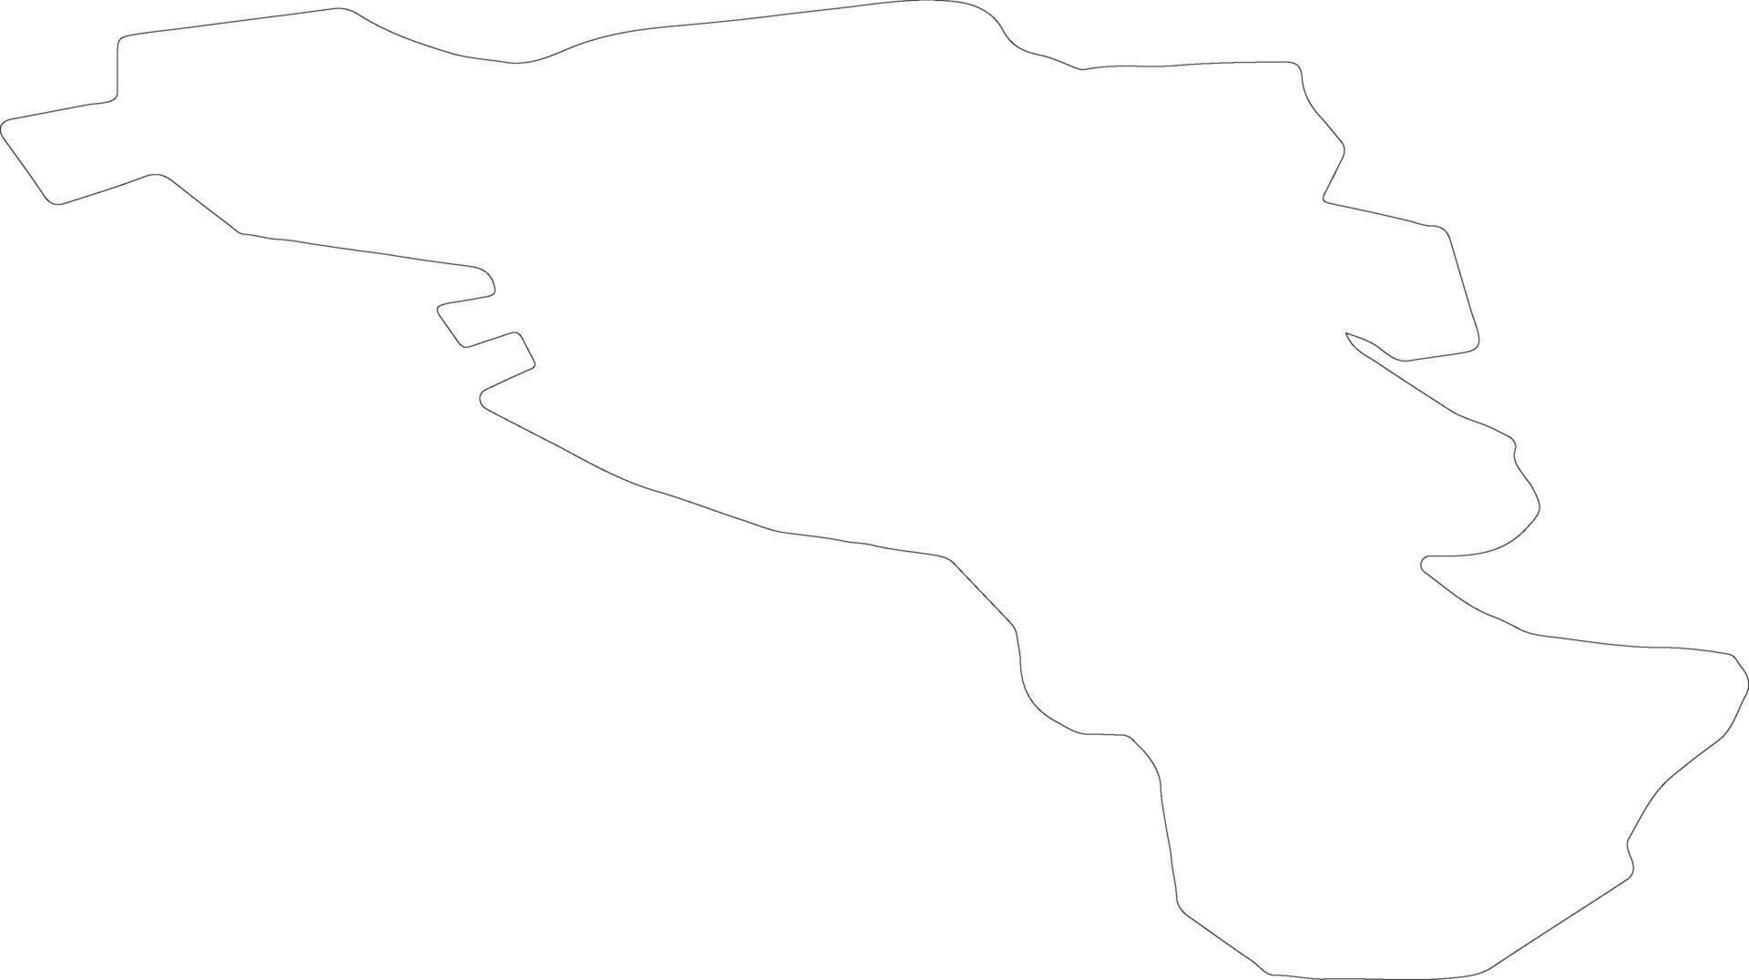 ozolnieku lettland översikt Karta vektor